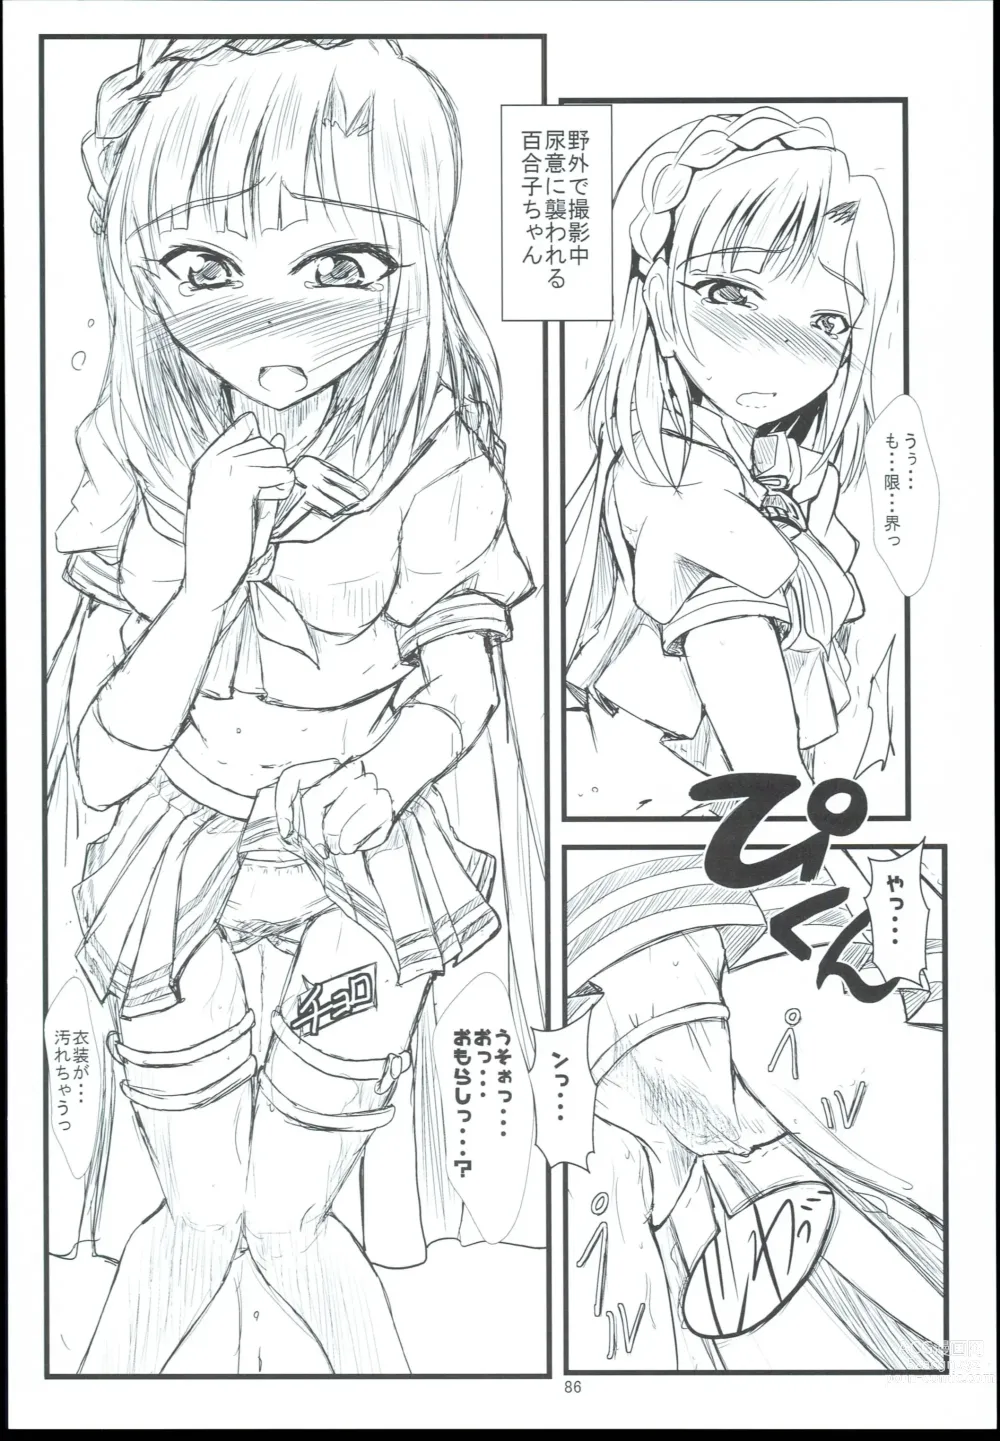 Page 86 of doujinshi Otanoshimi no Kioku Sousyuuhen